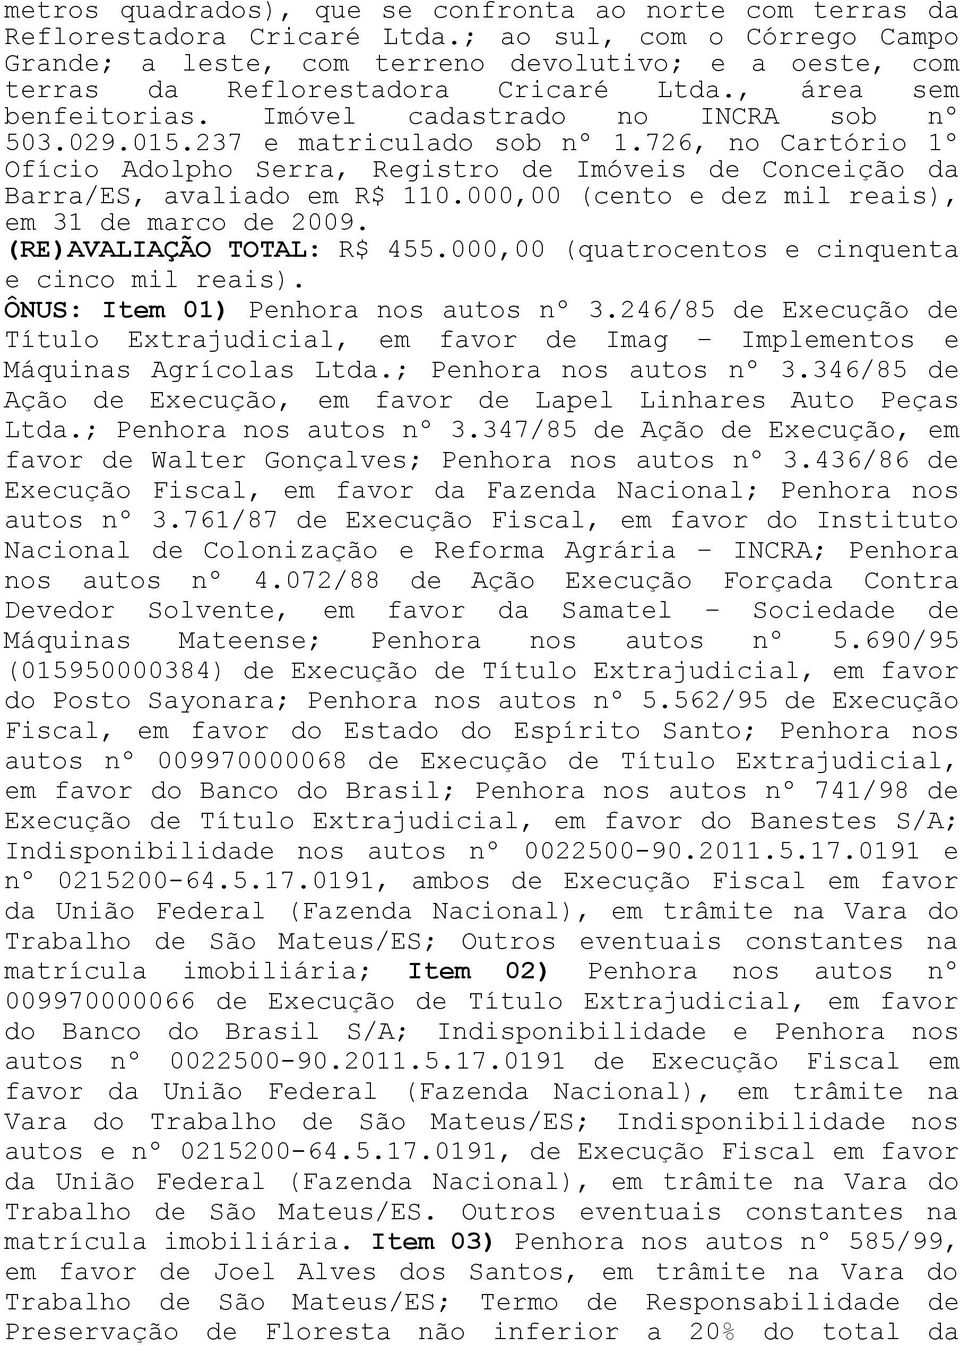 237 e matriculado sob nº 1.726, no Cartório 1º Ofício Adolpho Serra, Registro de Imóveis de Conceição da Barra/ES, avaliado em R$ 110.000,00 (cento e dez mil reais), em 31 de marco de 2009.